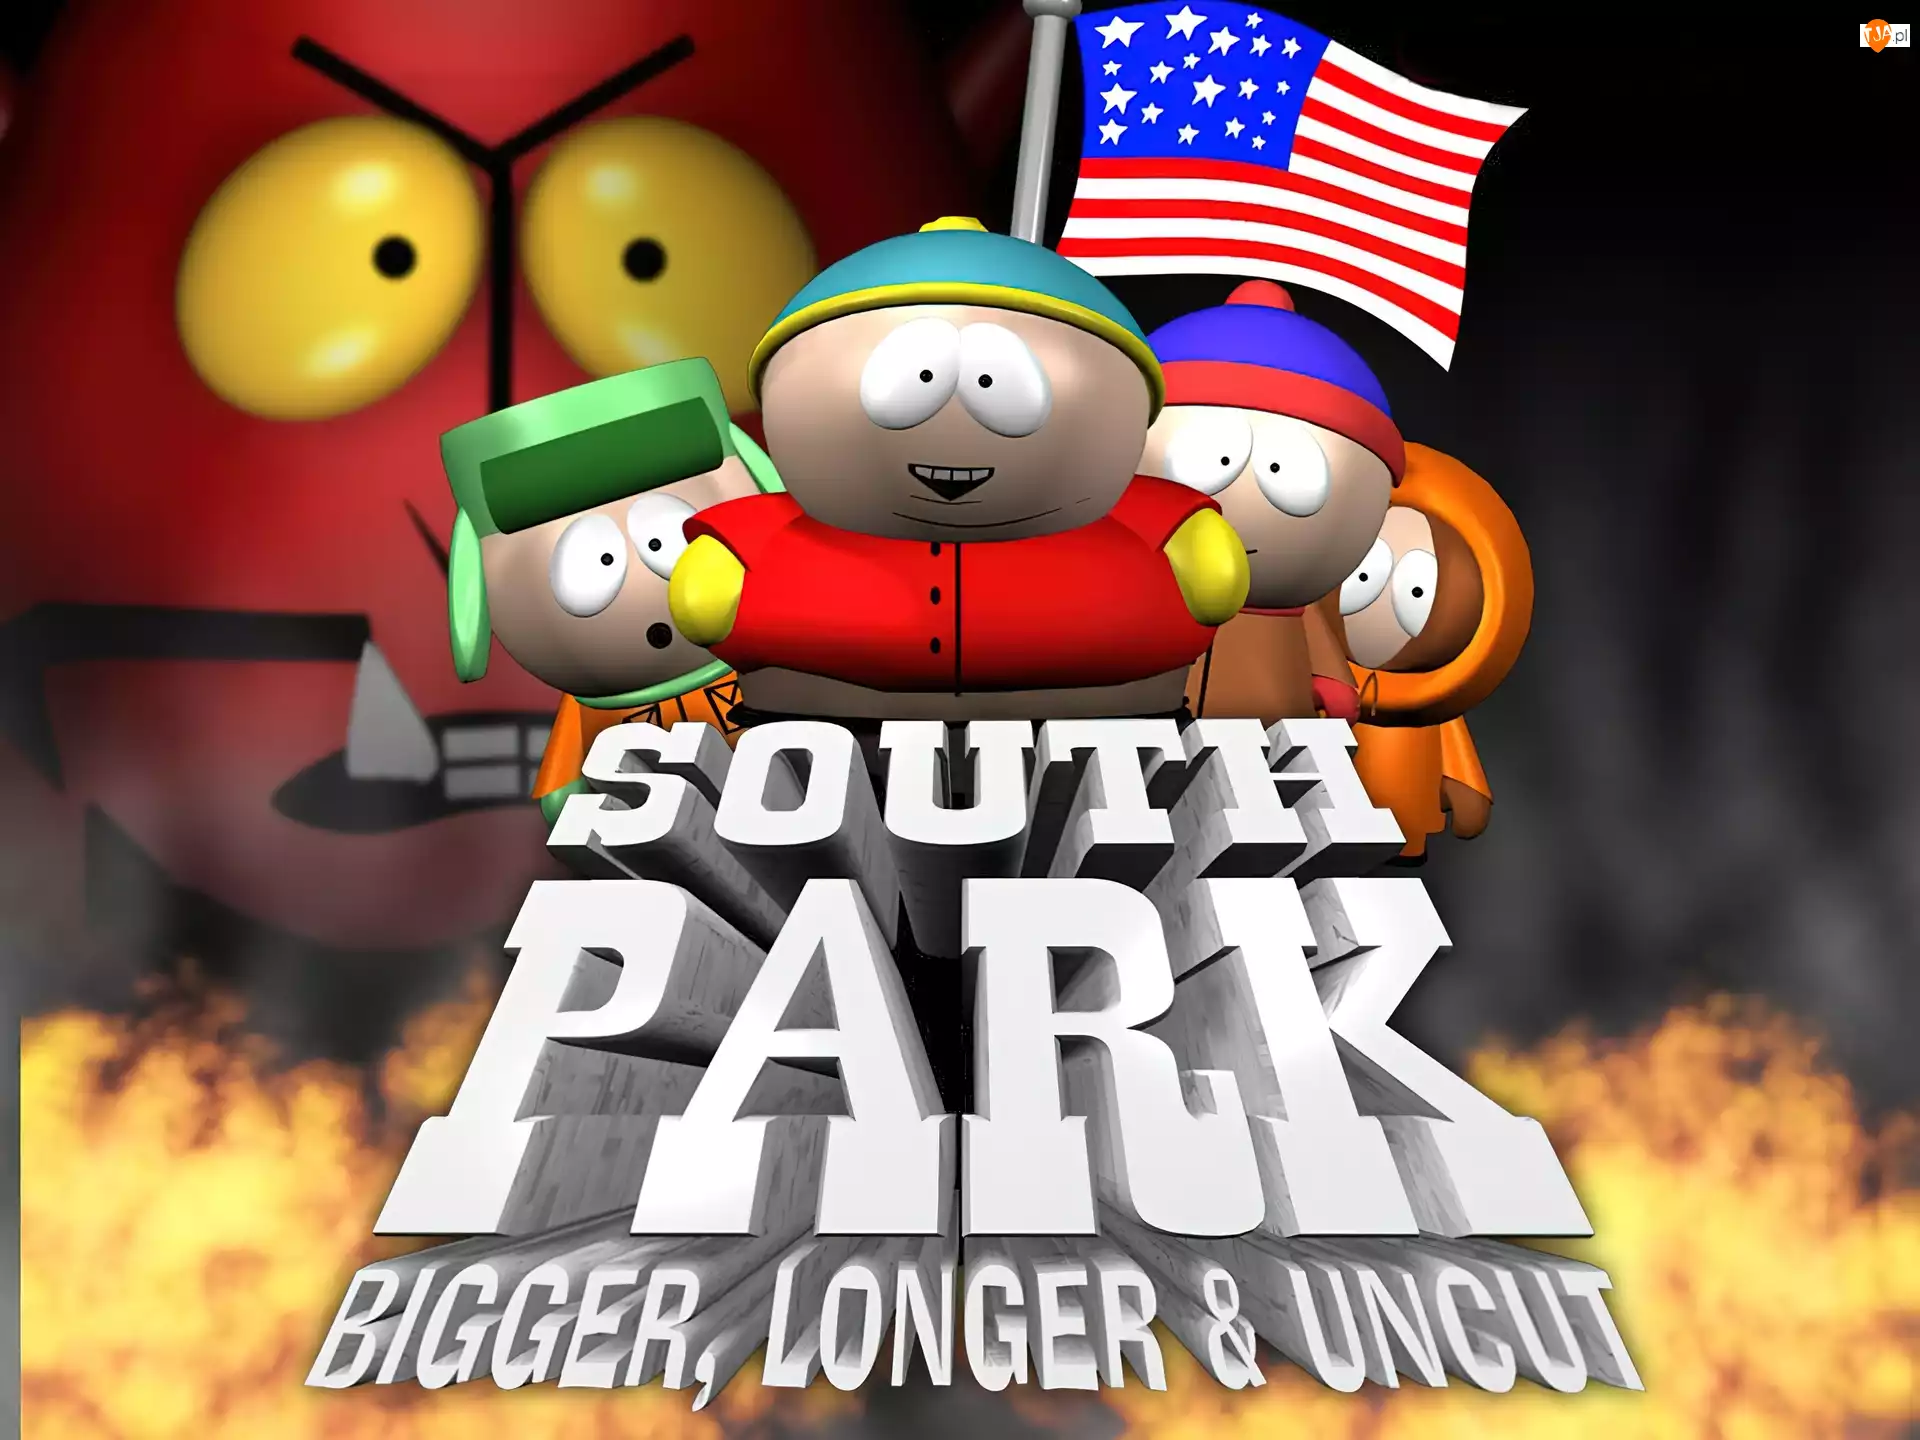 flaga, Miasteczko South Park, bohaterowie